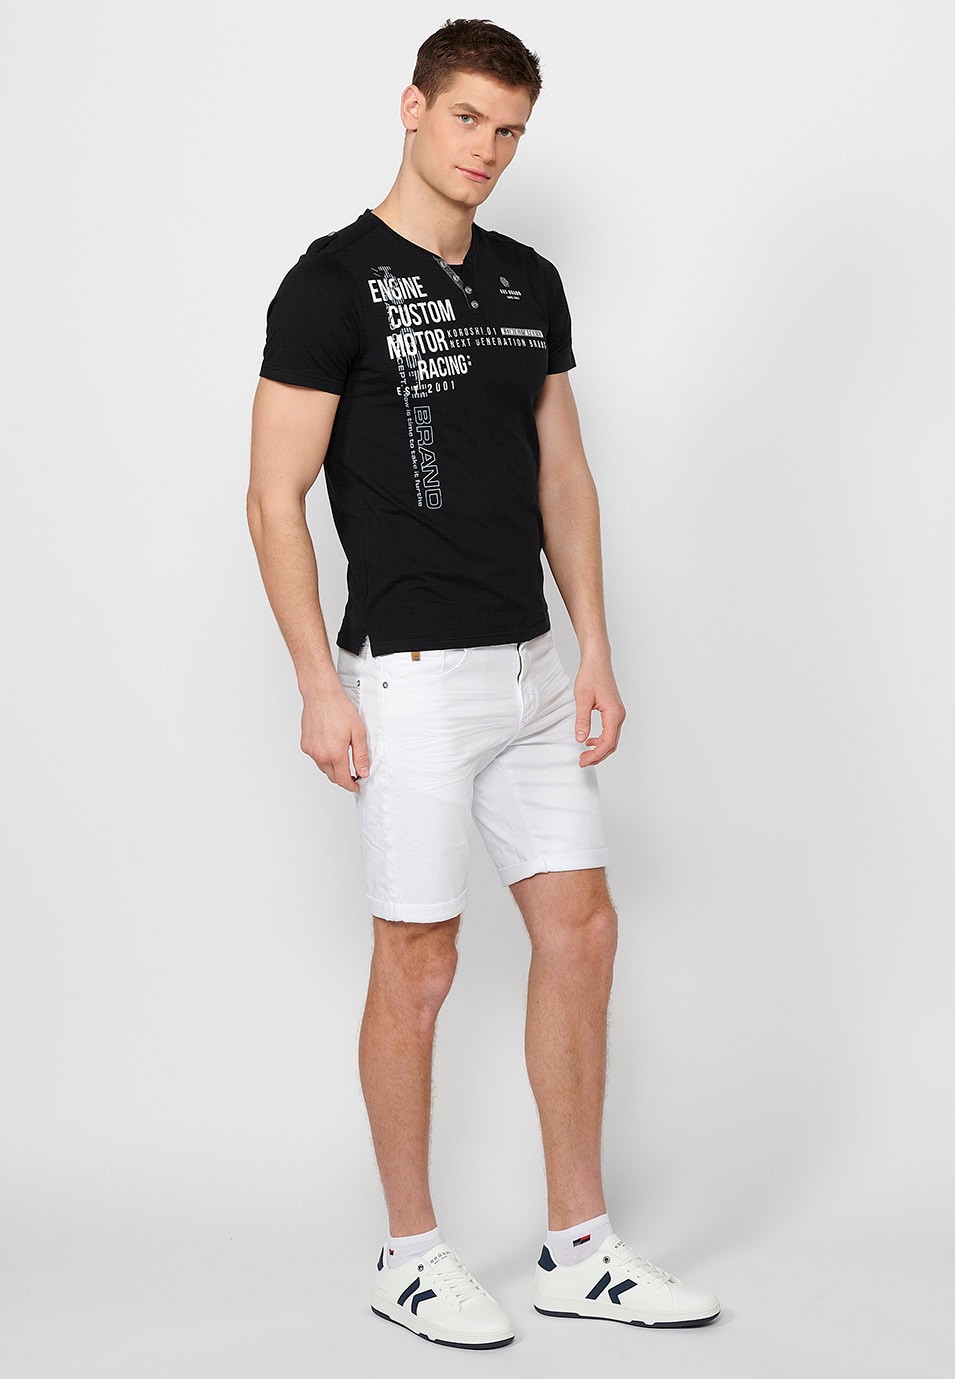 Camiseta de manga corta de algodon, cuello redondo con abertura abotonada, color negropara hombre